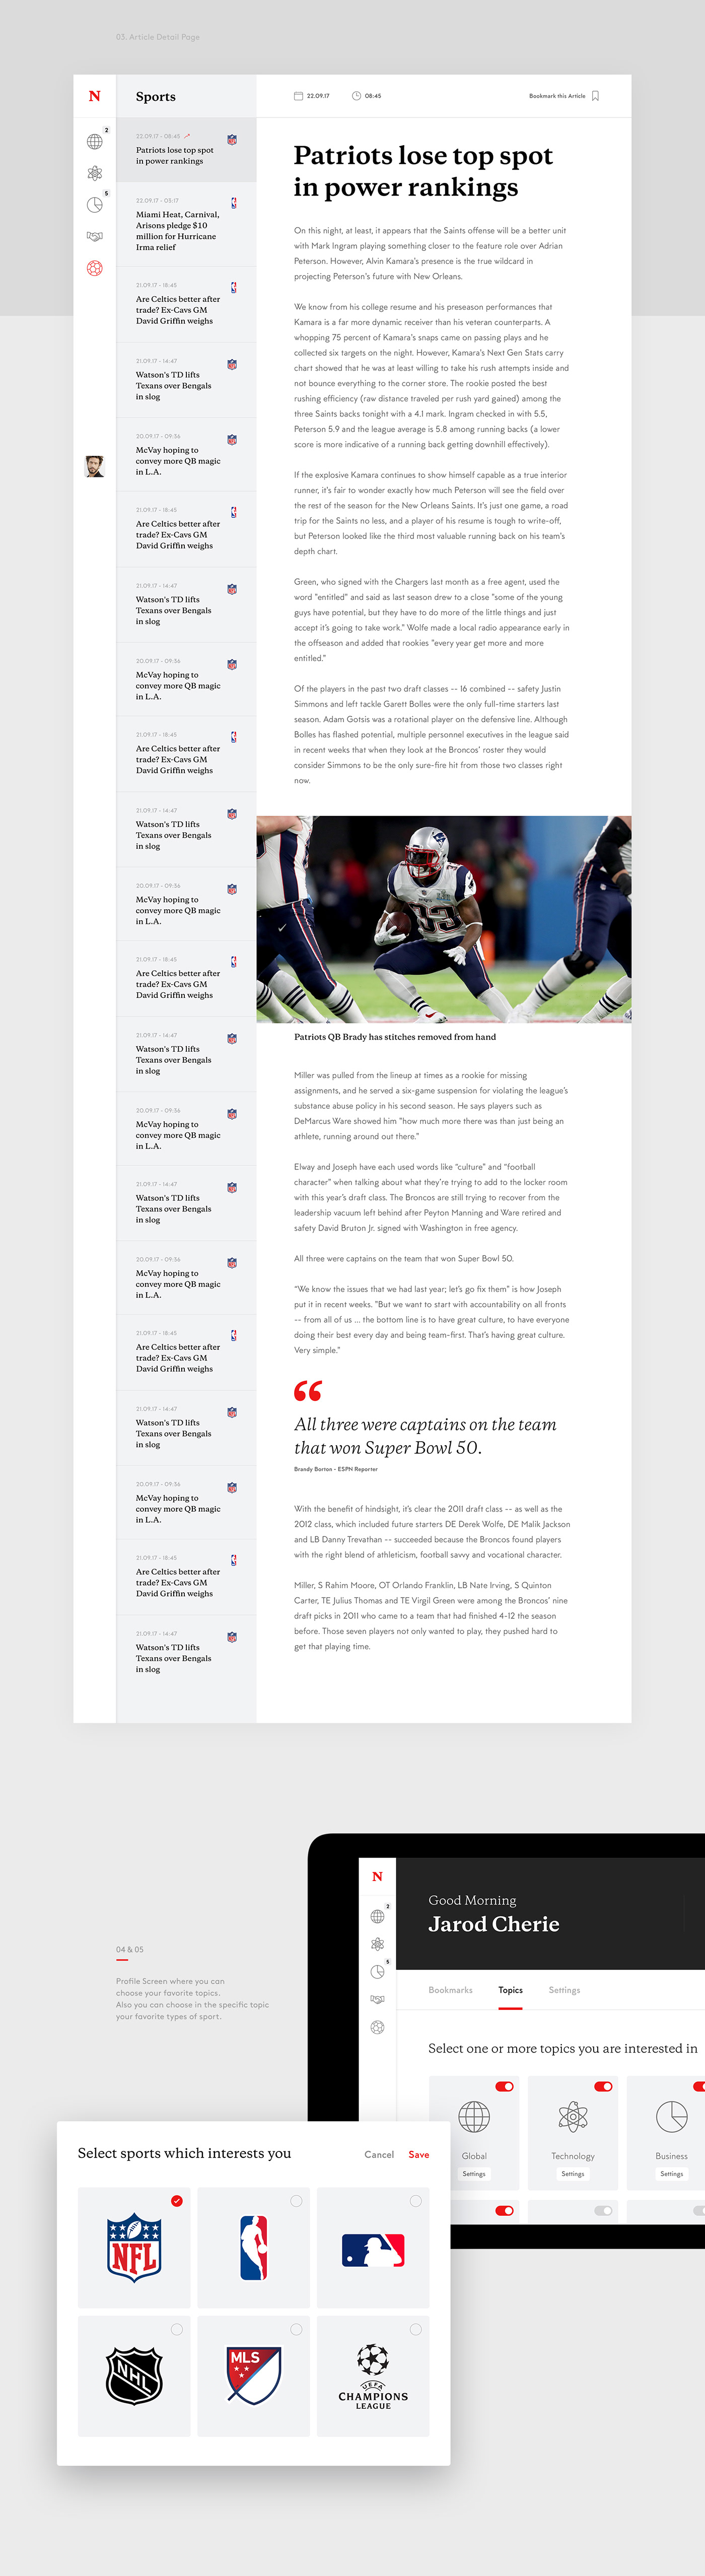 newspaper news app iPad sports worldnews